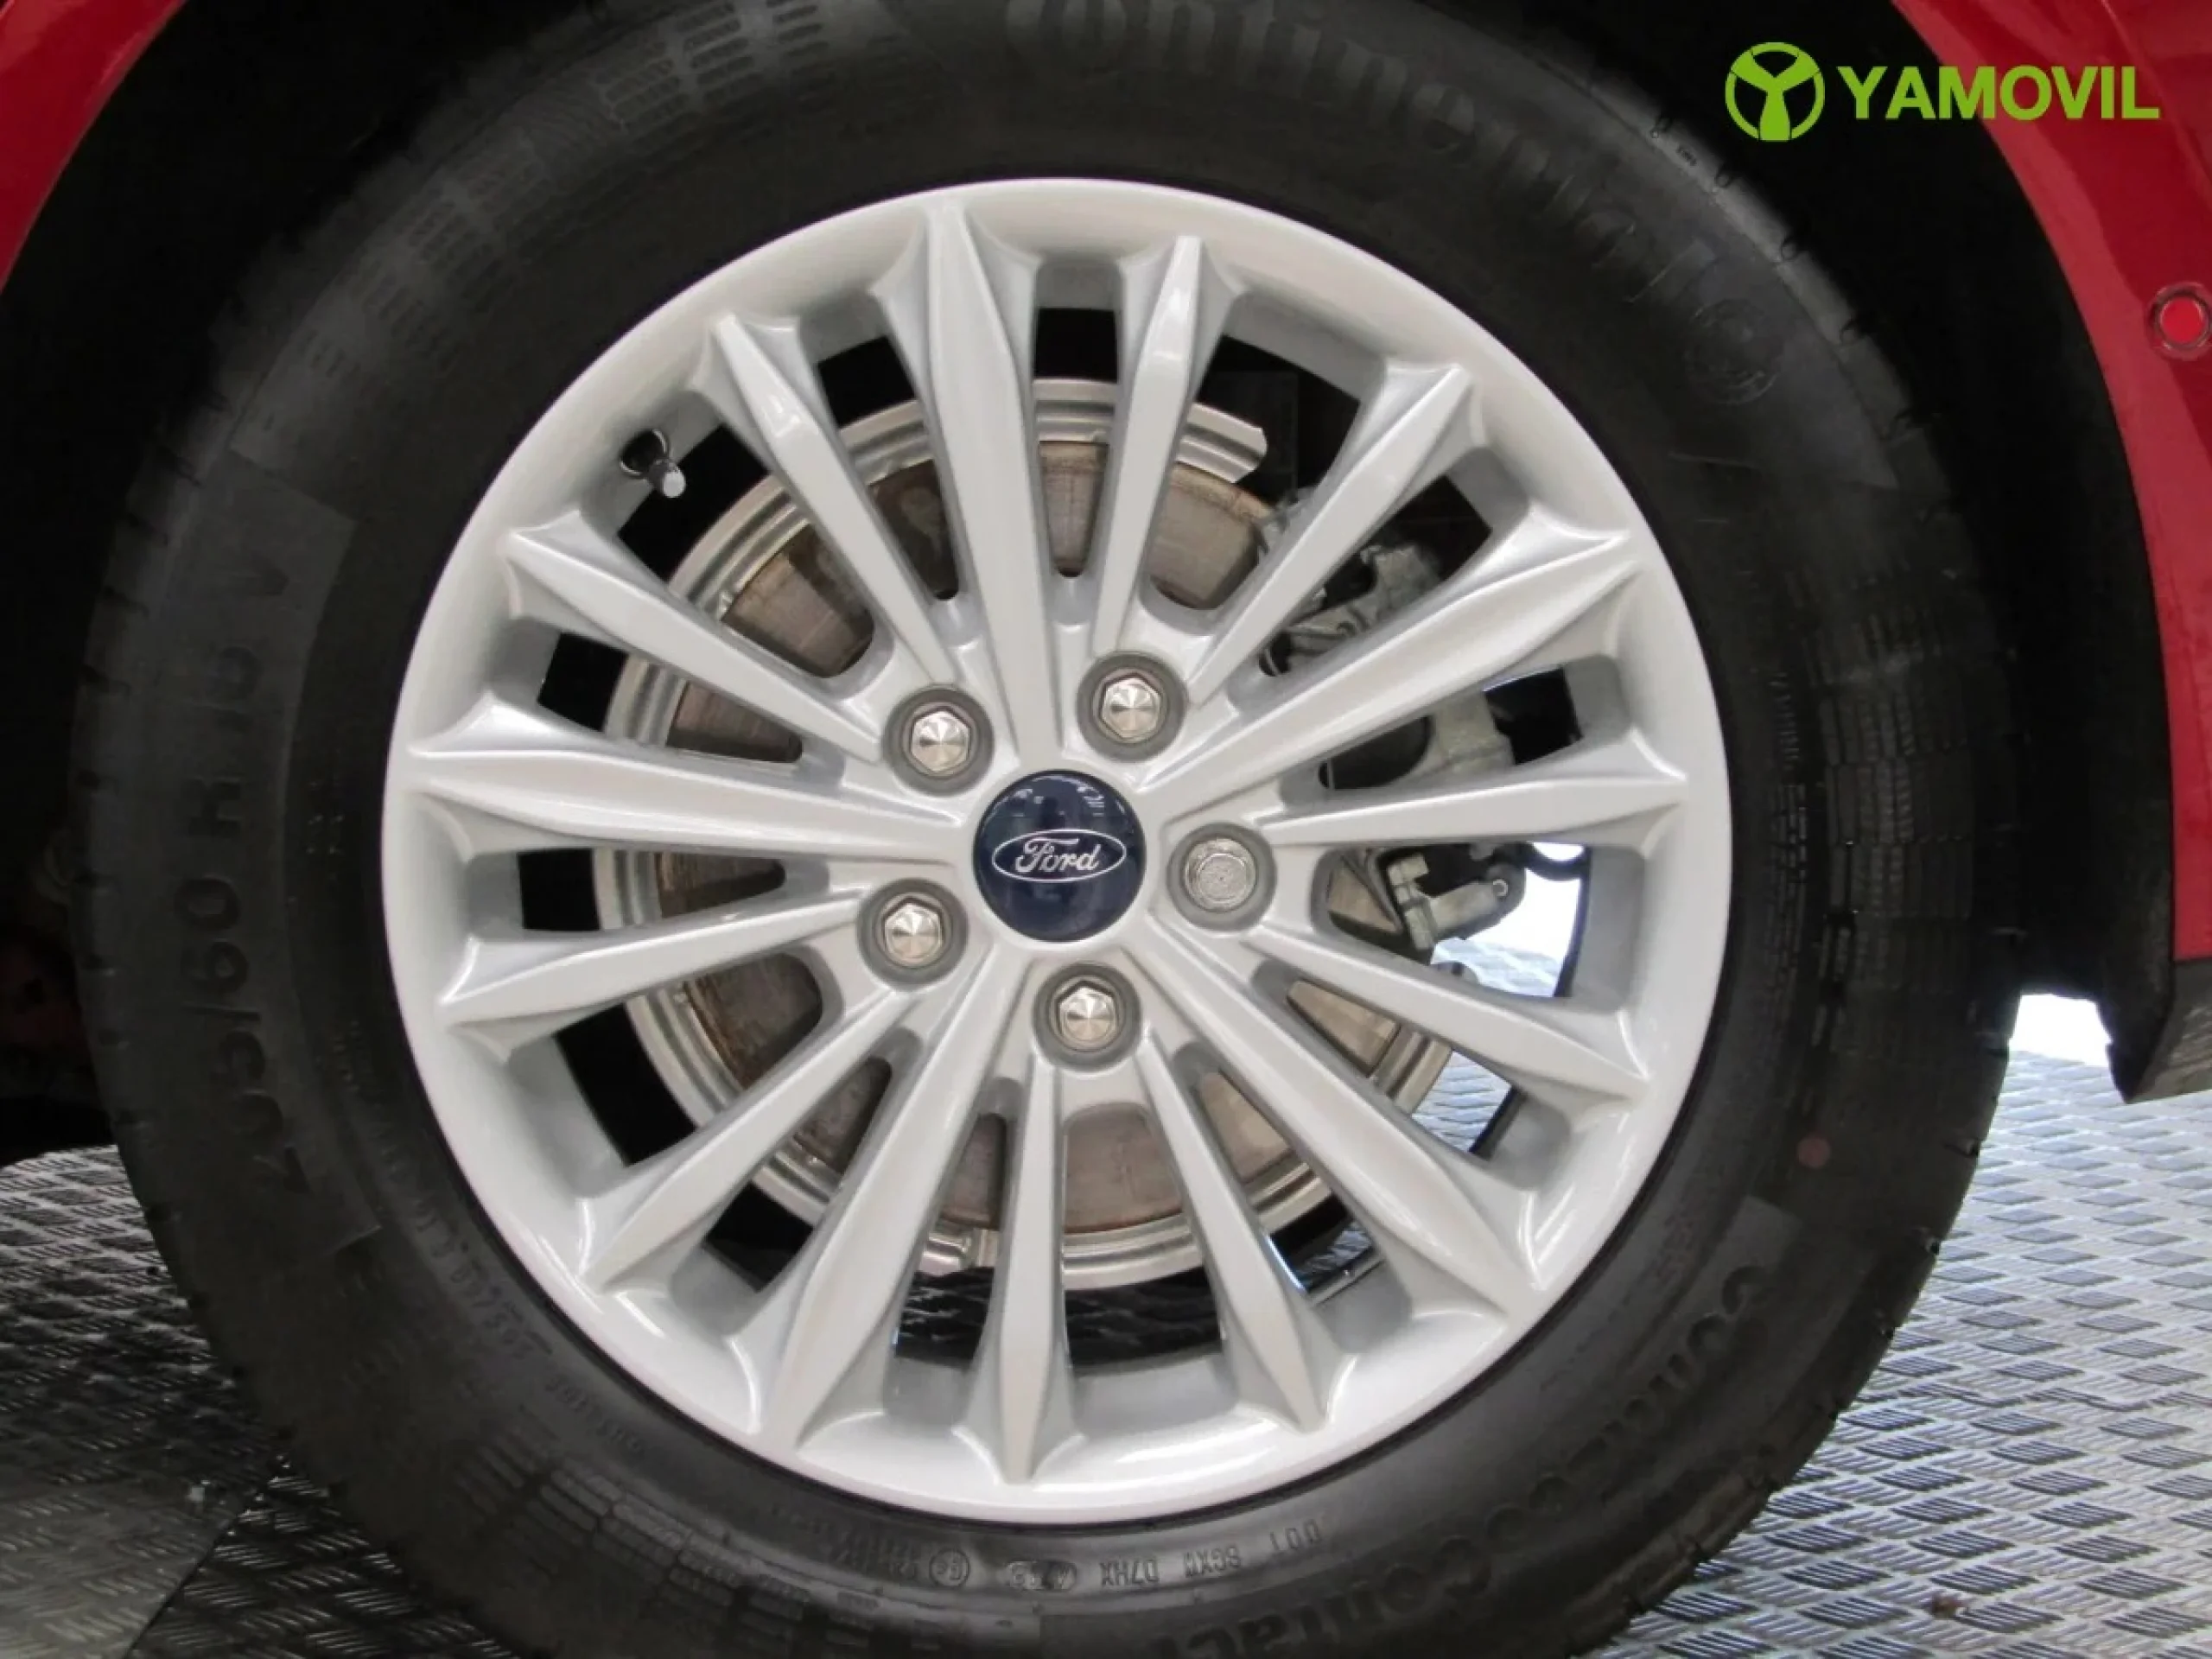 Ford Focus 1.0 Ecoboost Titanium Powershift 92 kW (125 CV) - Foto 11